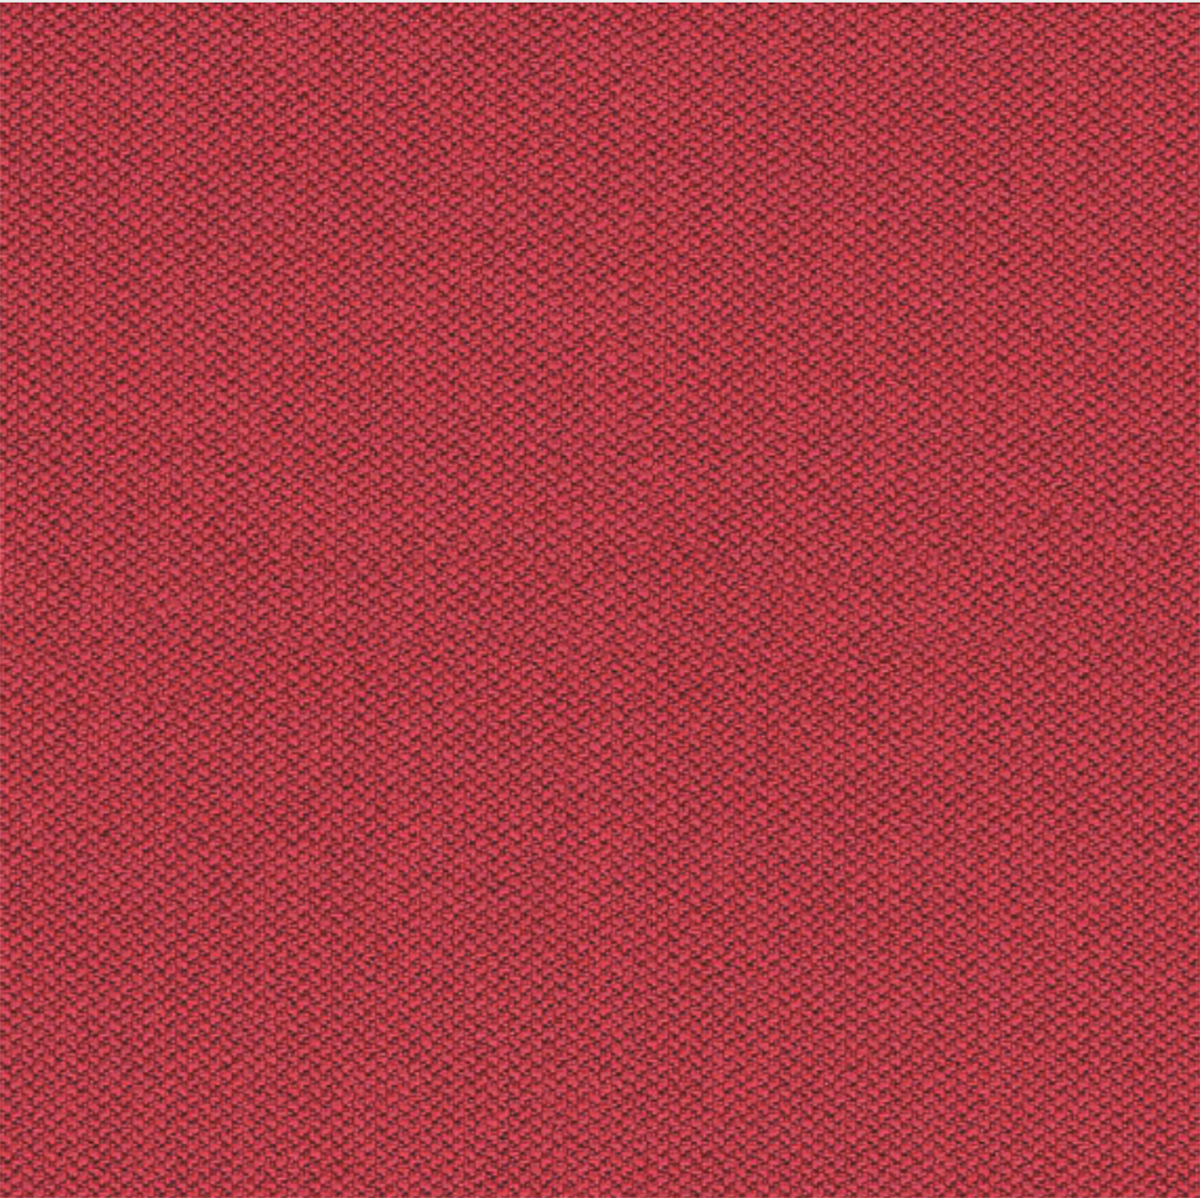 Camira Red Era Fabric [+€185.76]